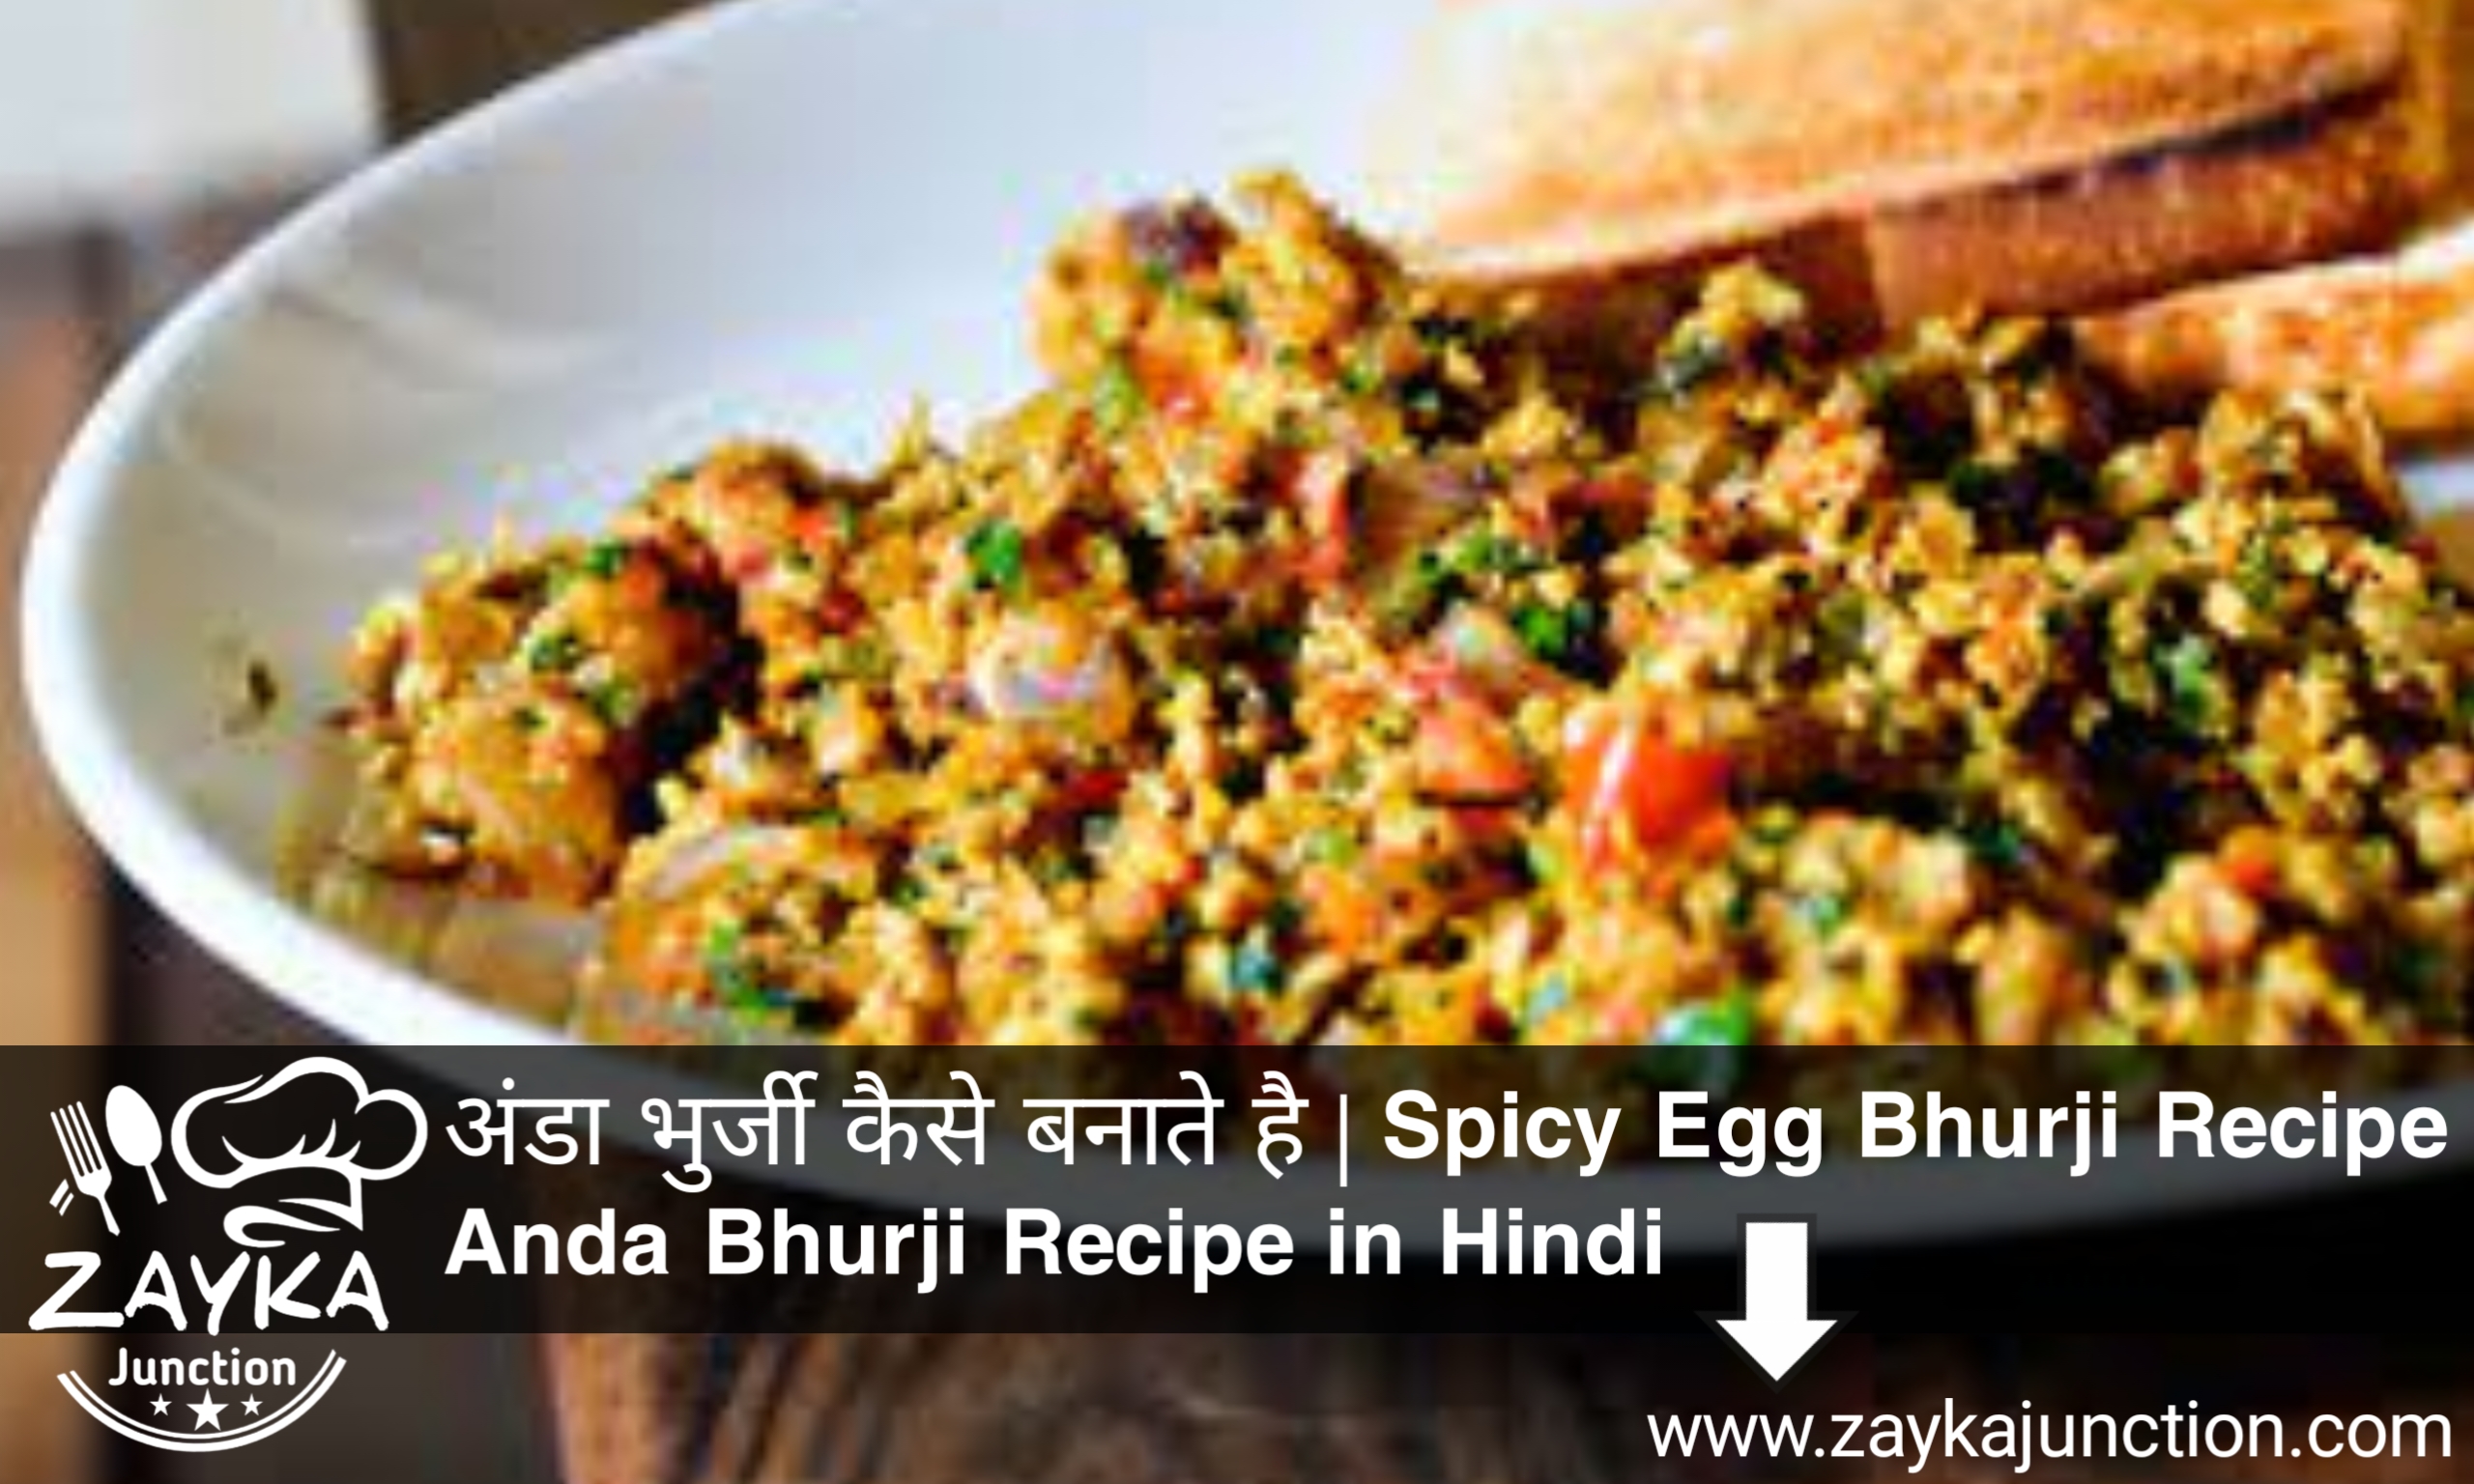 अंडा भुर्जी कैसे बनाते है | Anda Bhurji Recipe in Hindi | Spicy Egg Bhurji Recipe